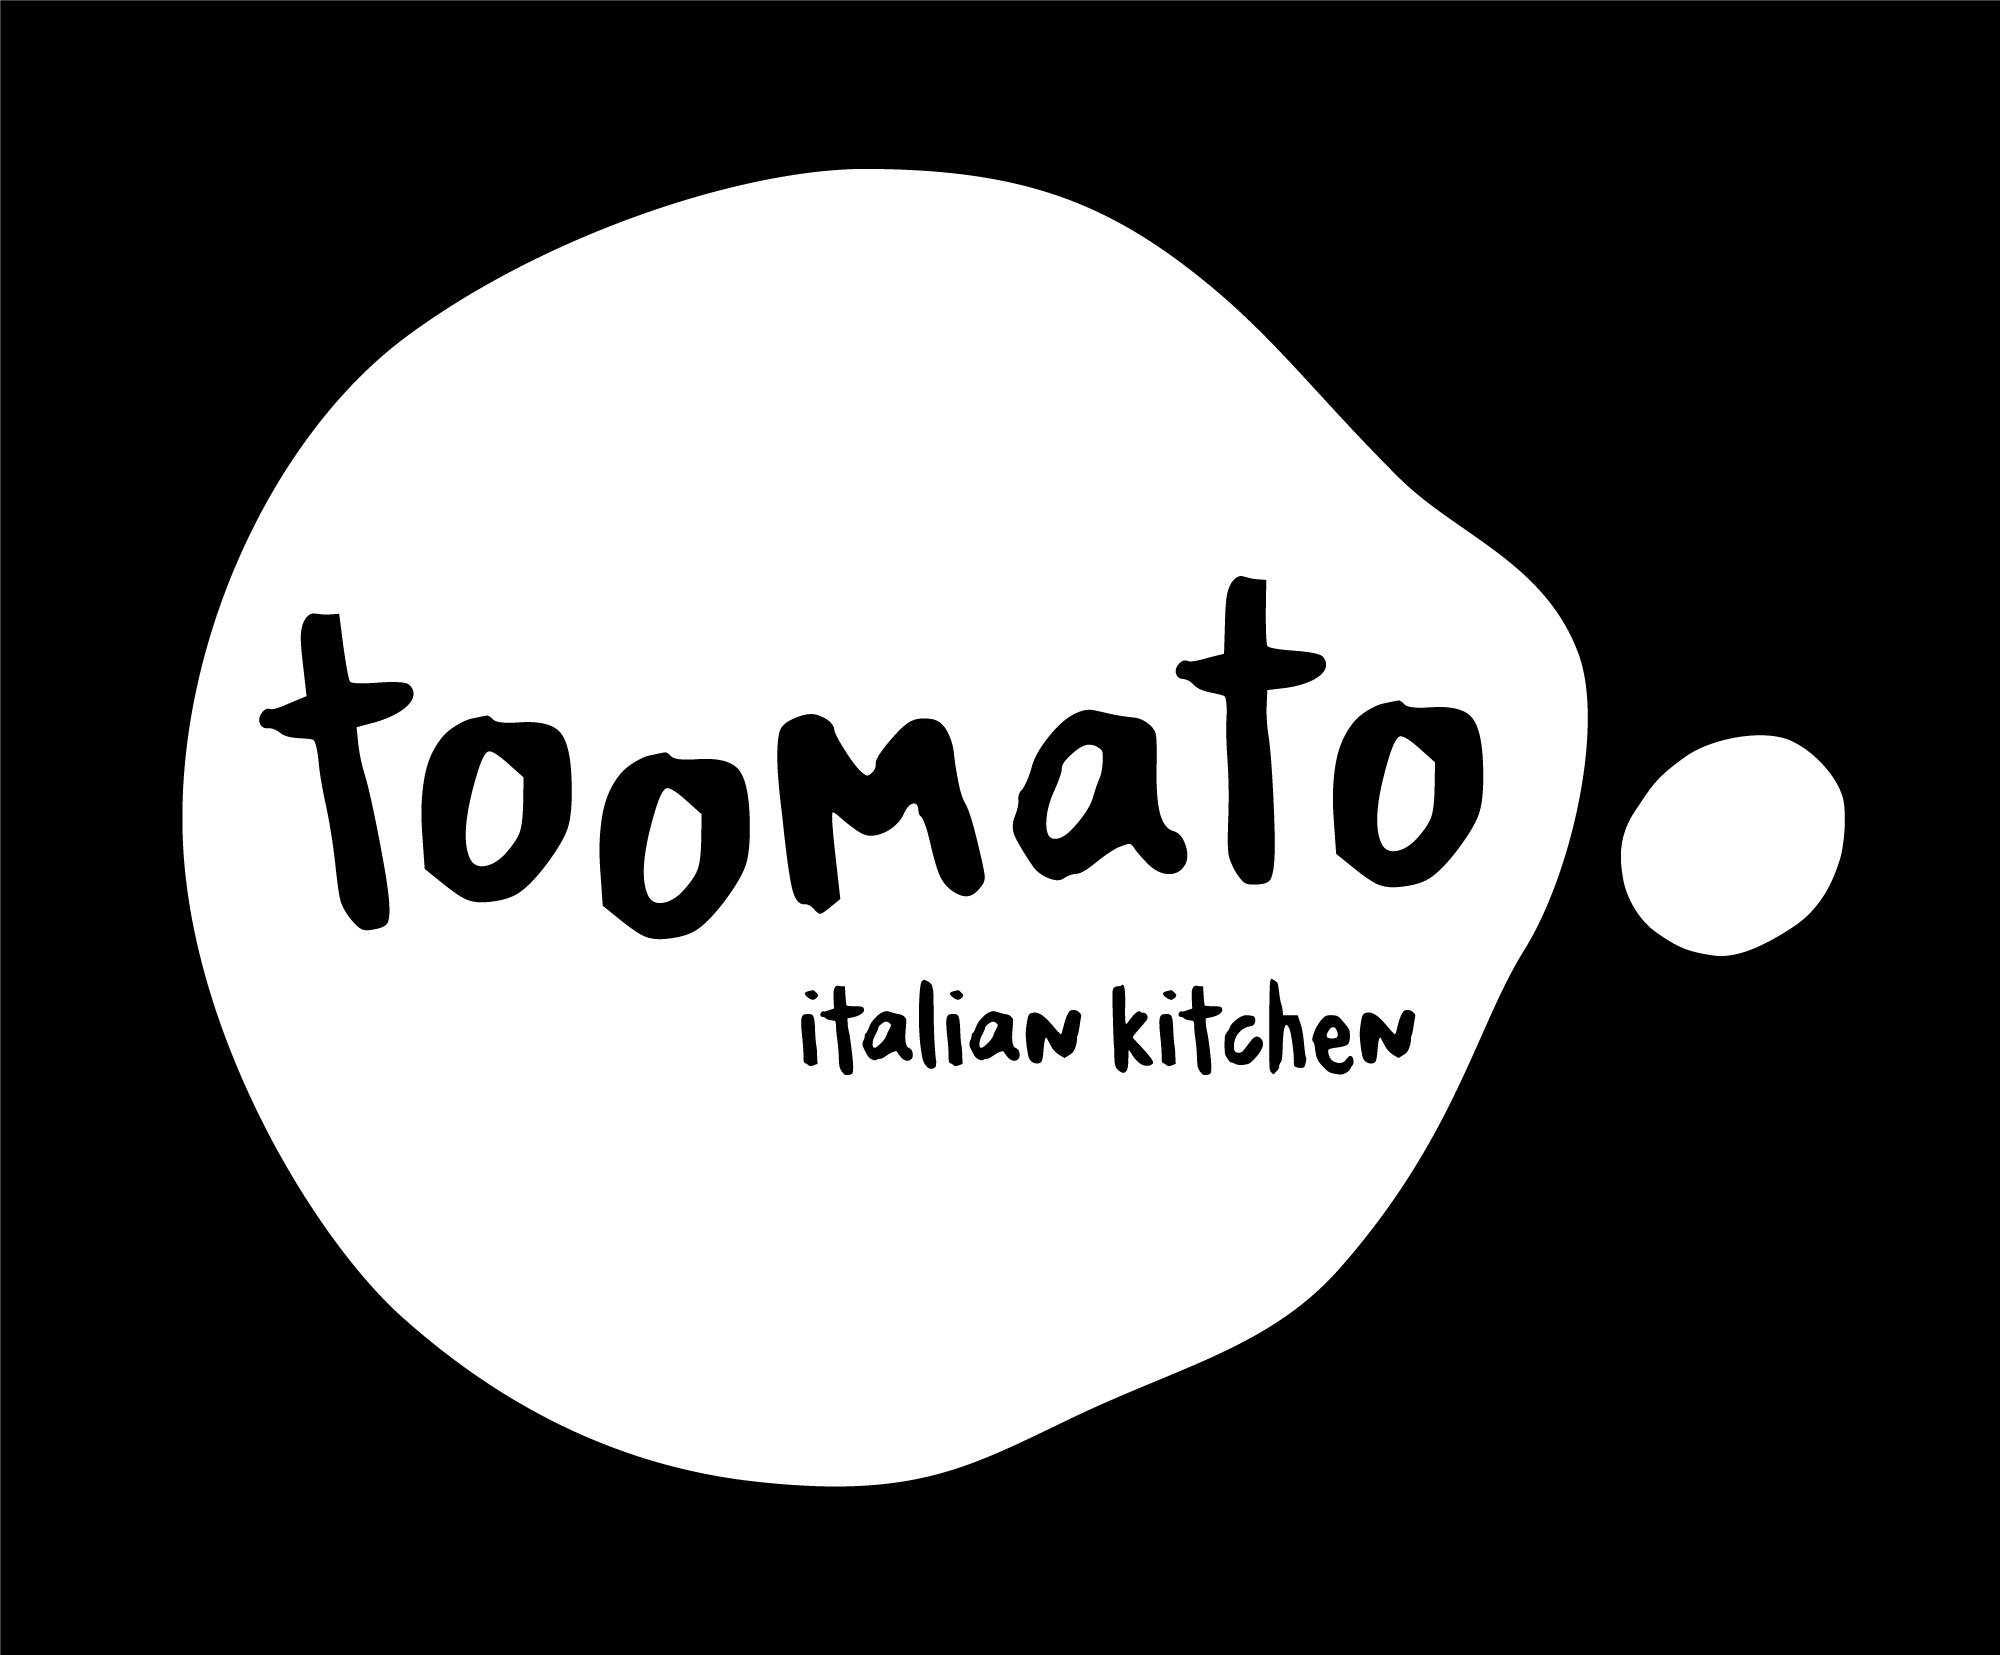 Image of Toomato